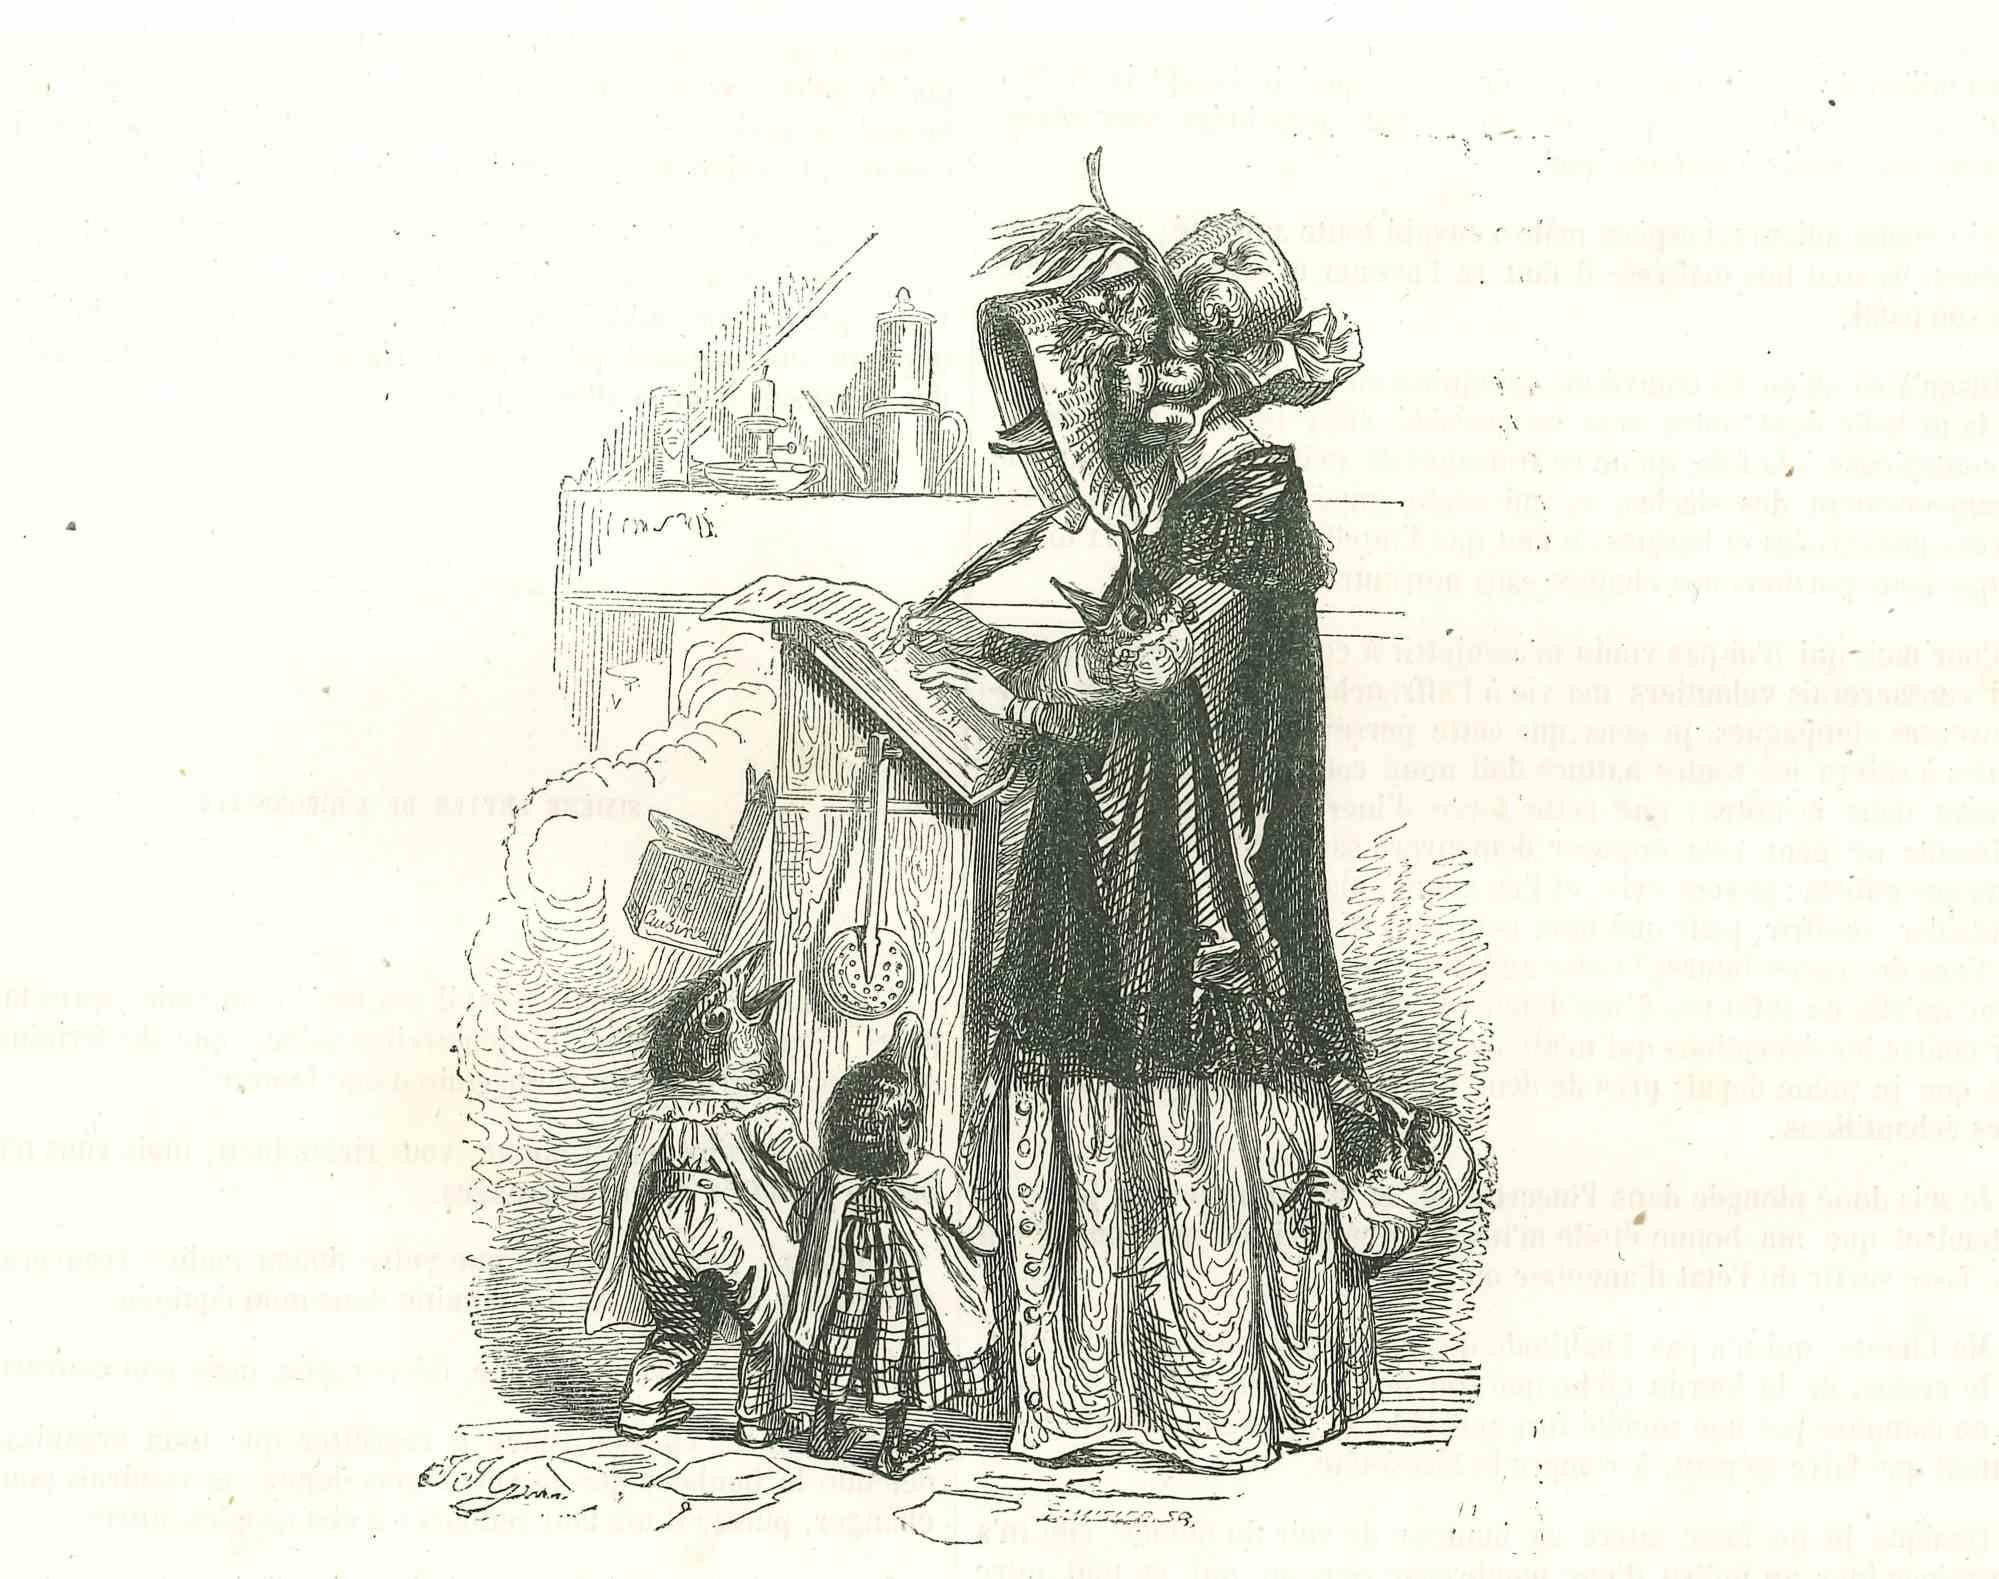 Commande de canard Mama Duck pour cuisine - Lithographie originale de J.J Grandville - 1852